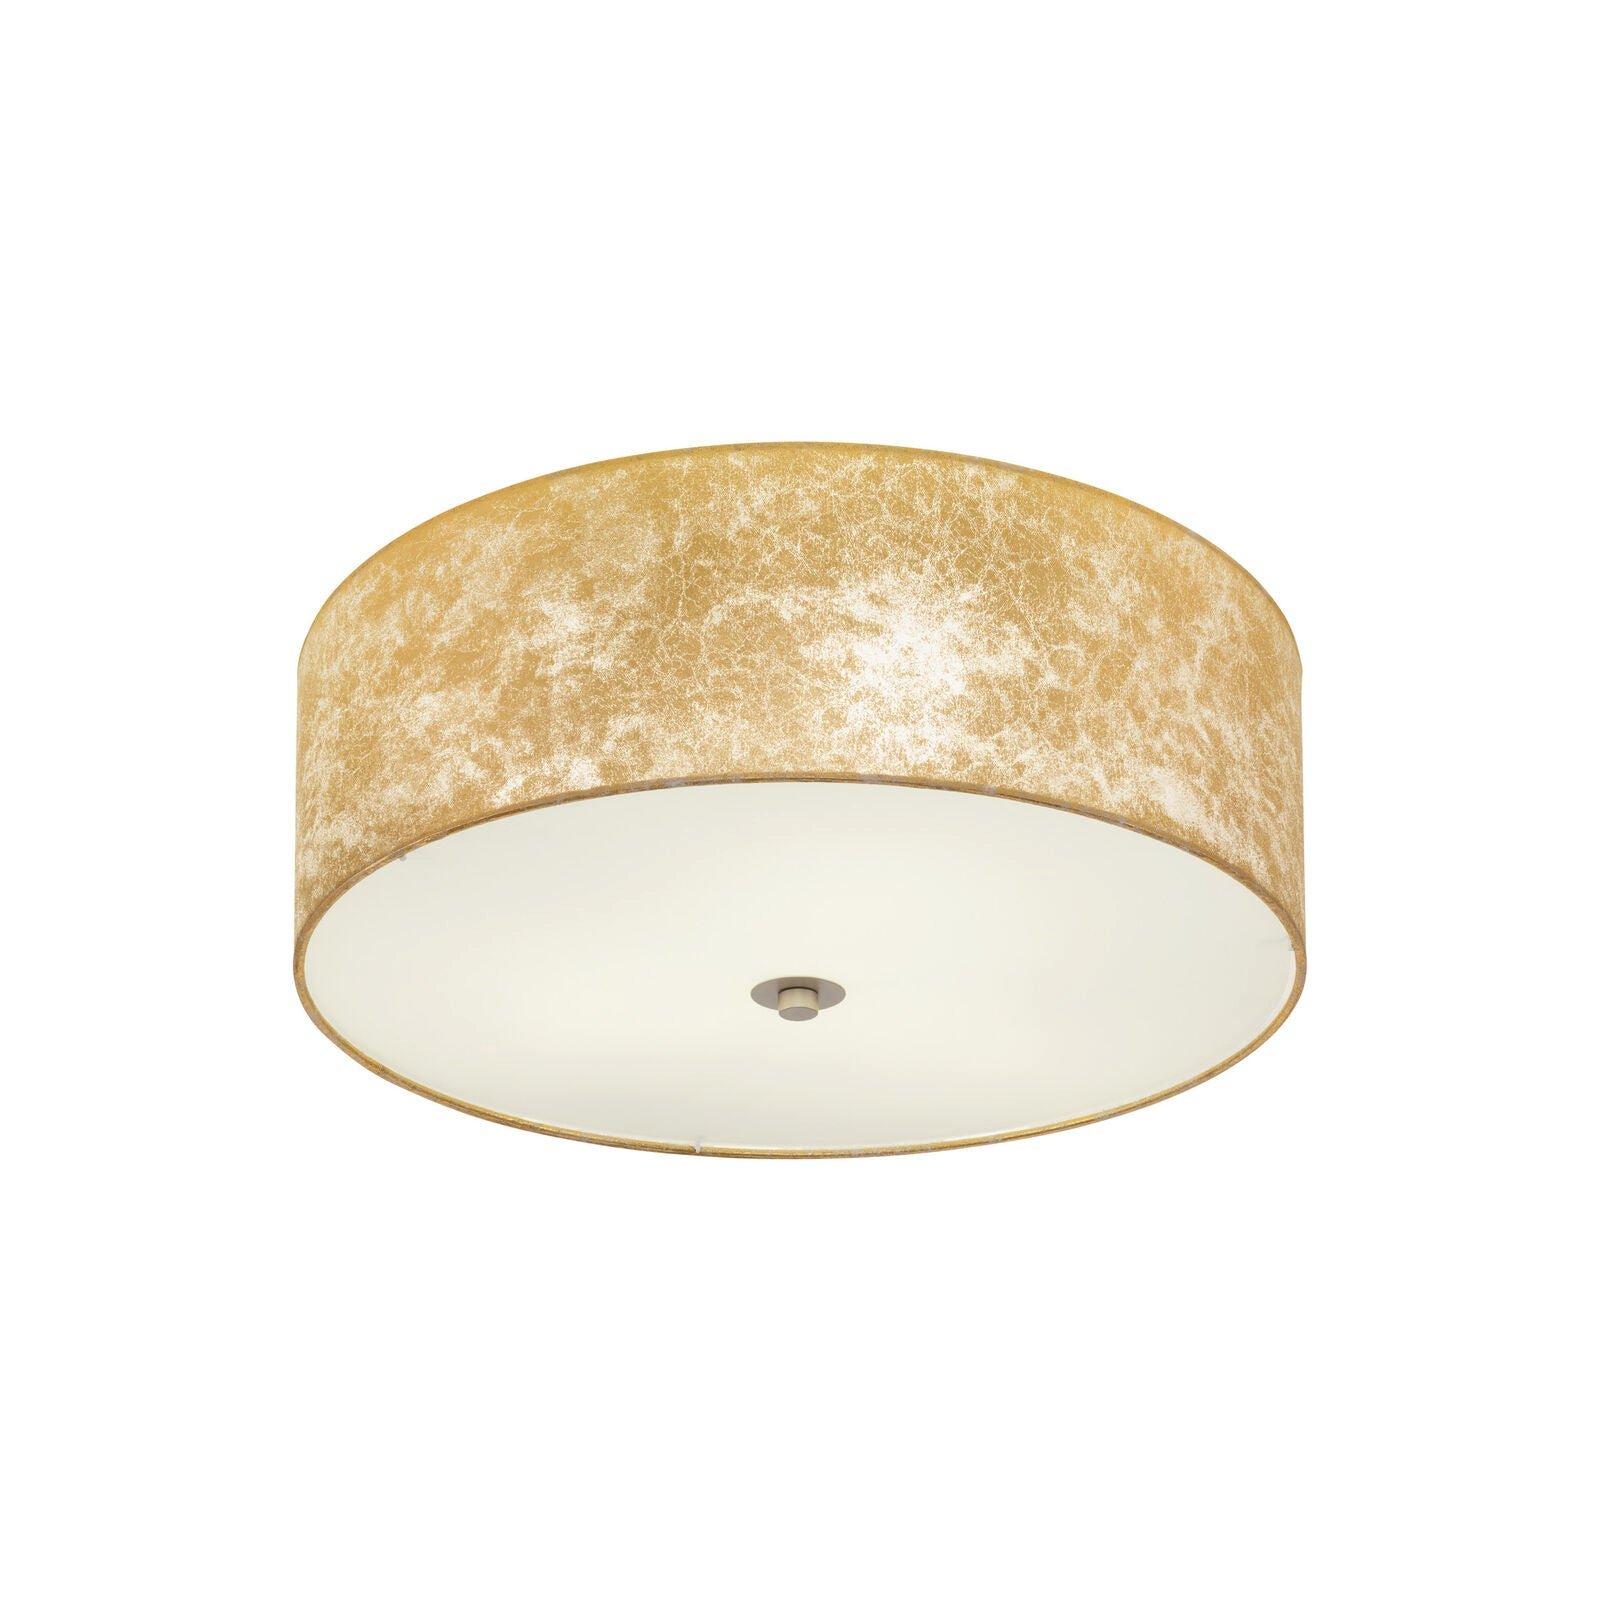 Flush Ceiling Light Colour Champagne Circular Shade Gold Fabric Bulb E27 3x60W